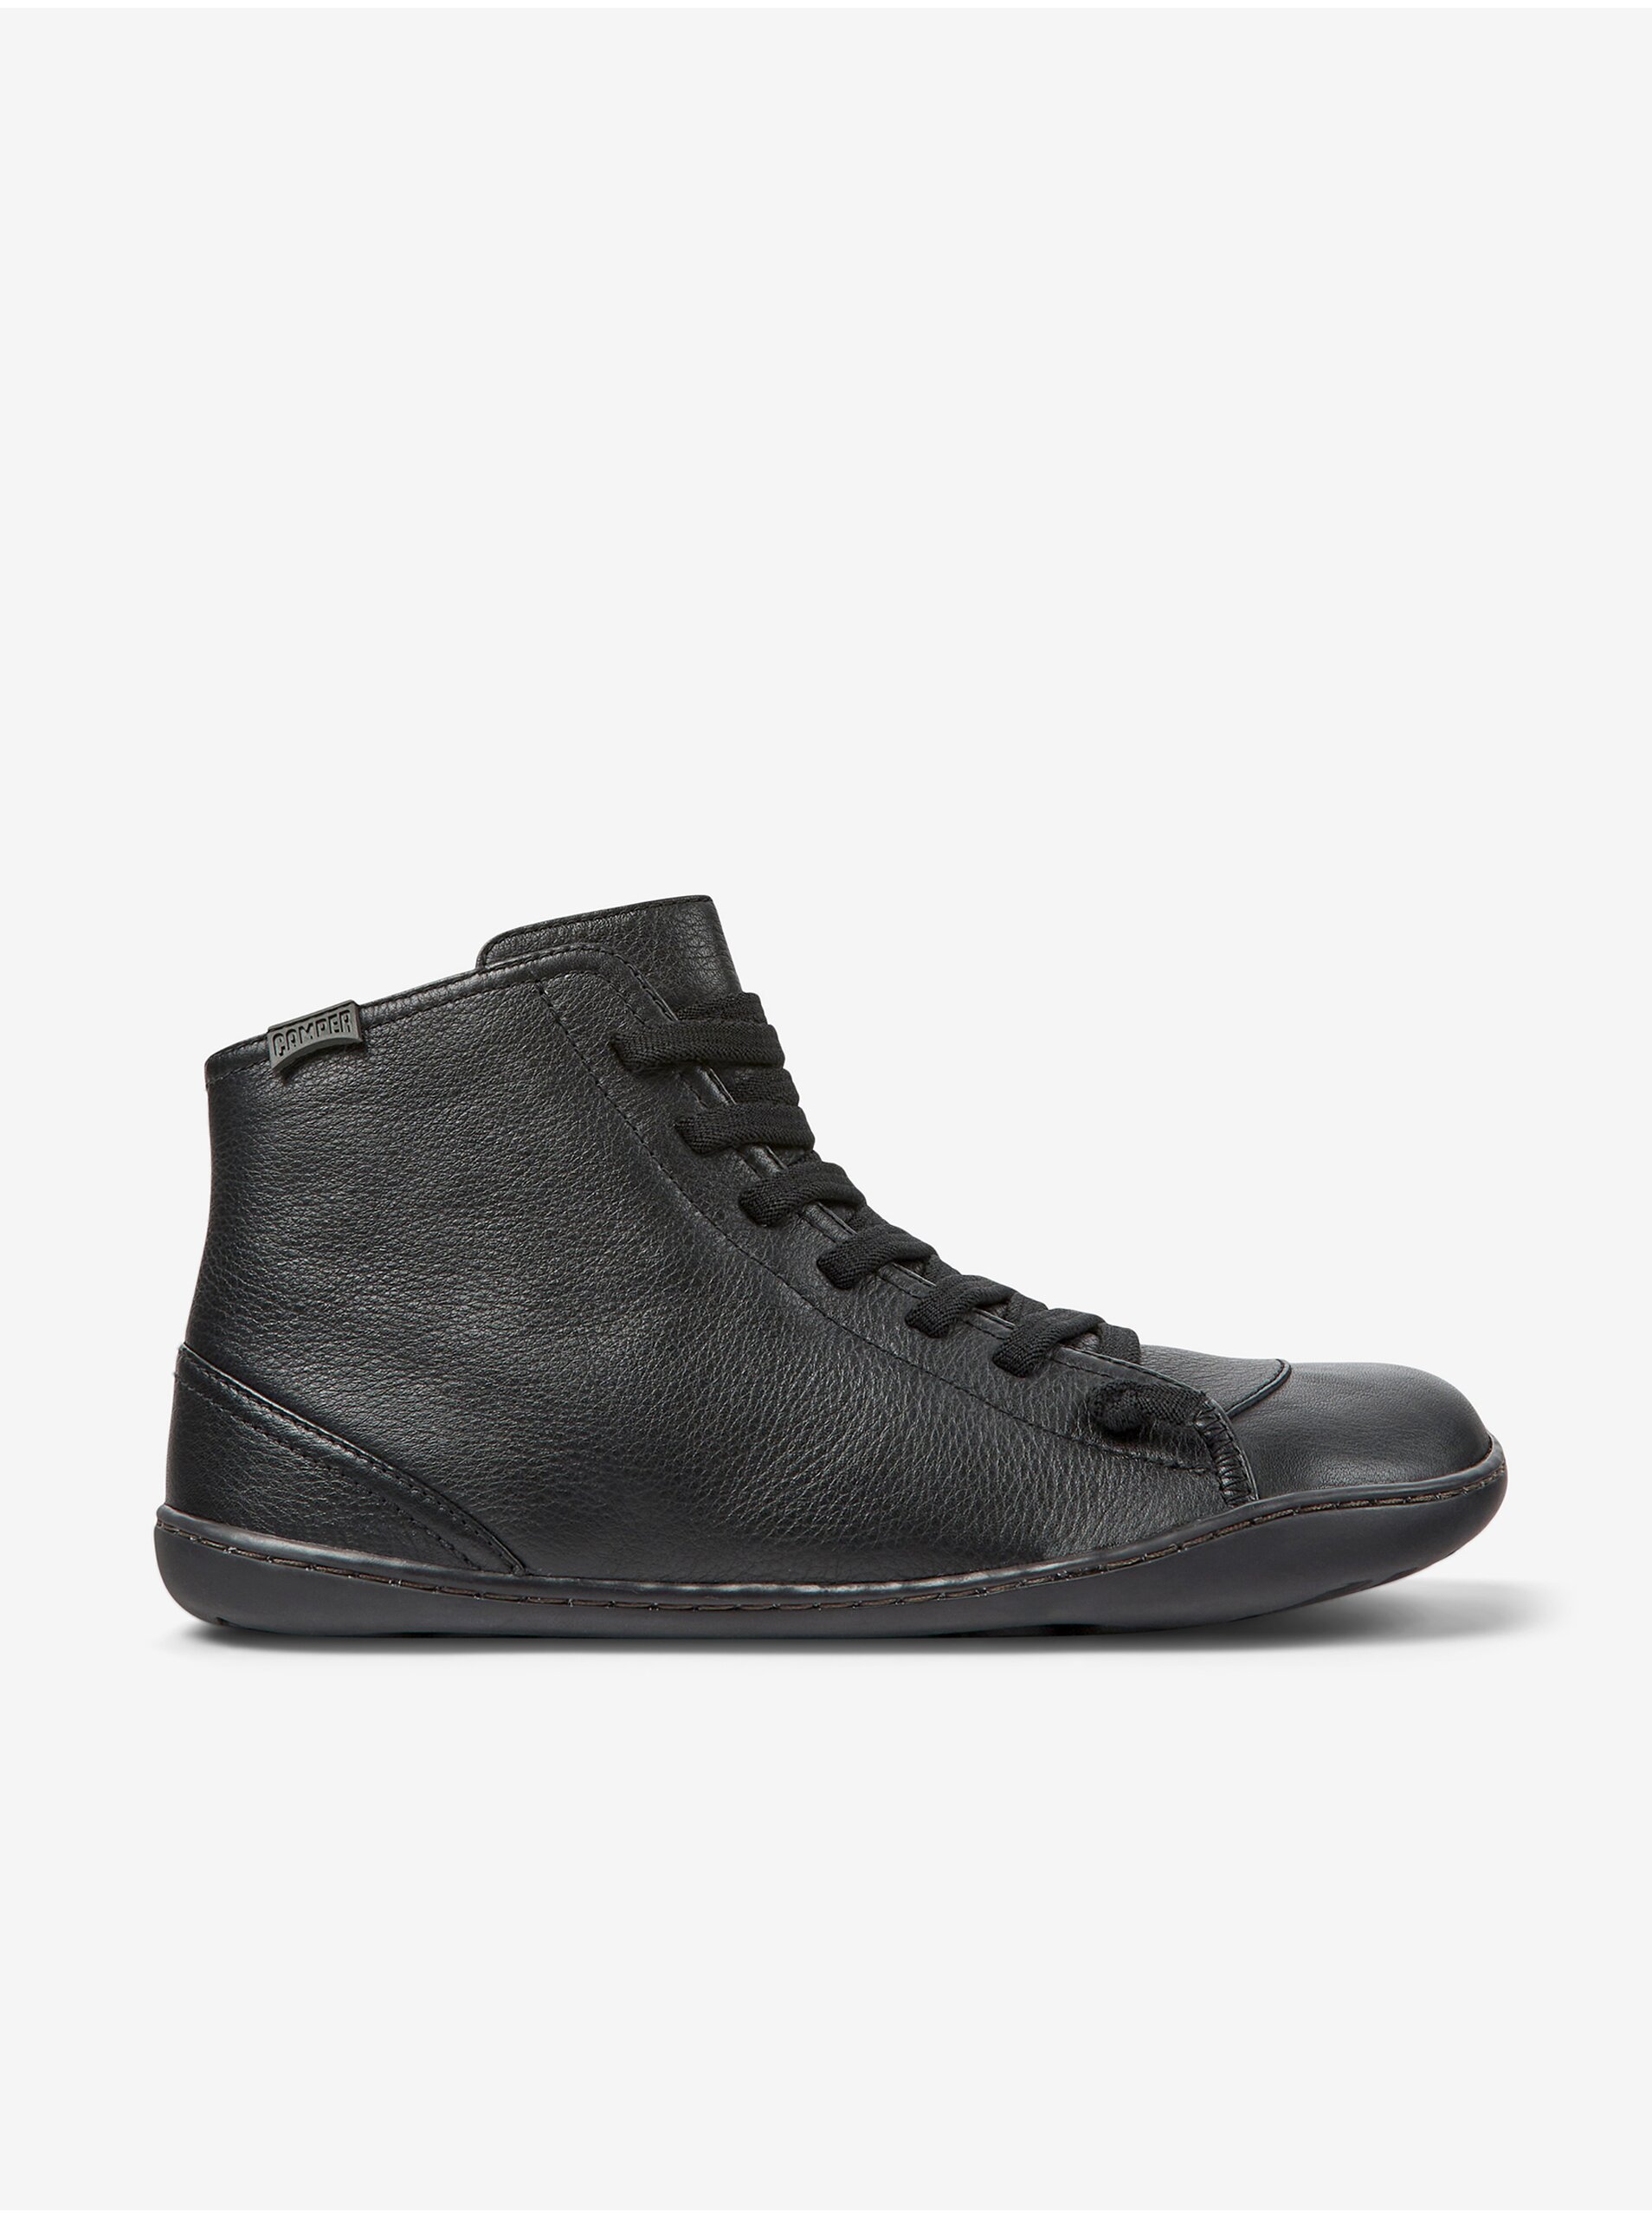 E-shop Černé dámské kožené kotníkové boty Camper Cami